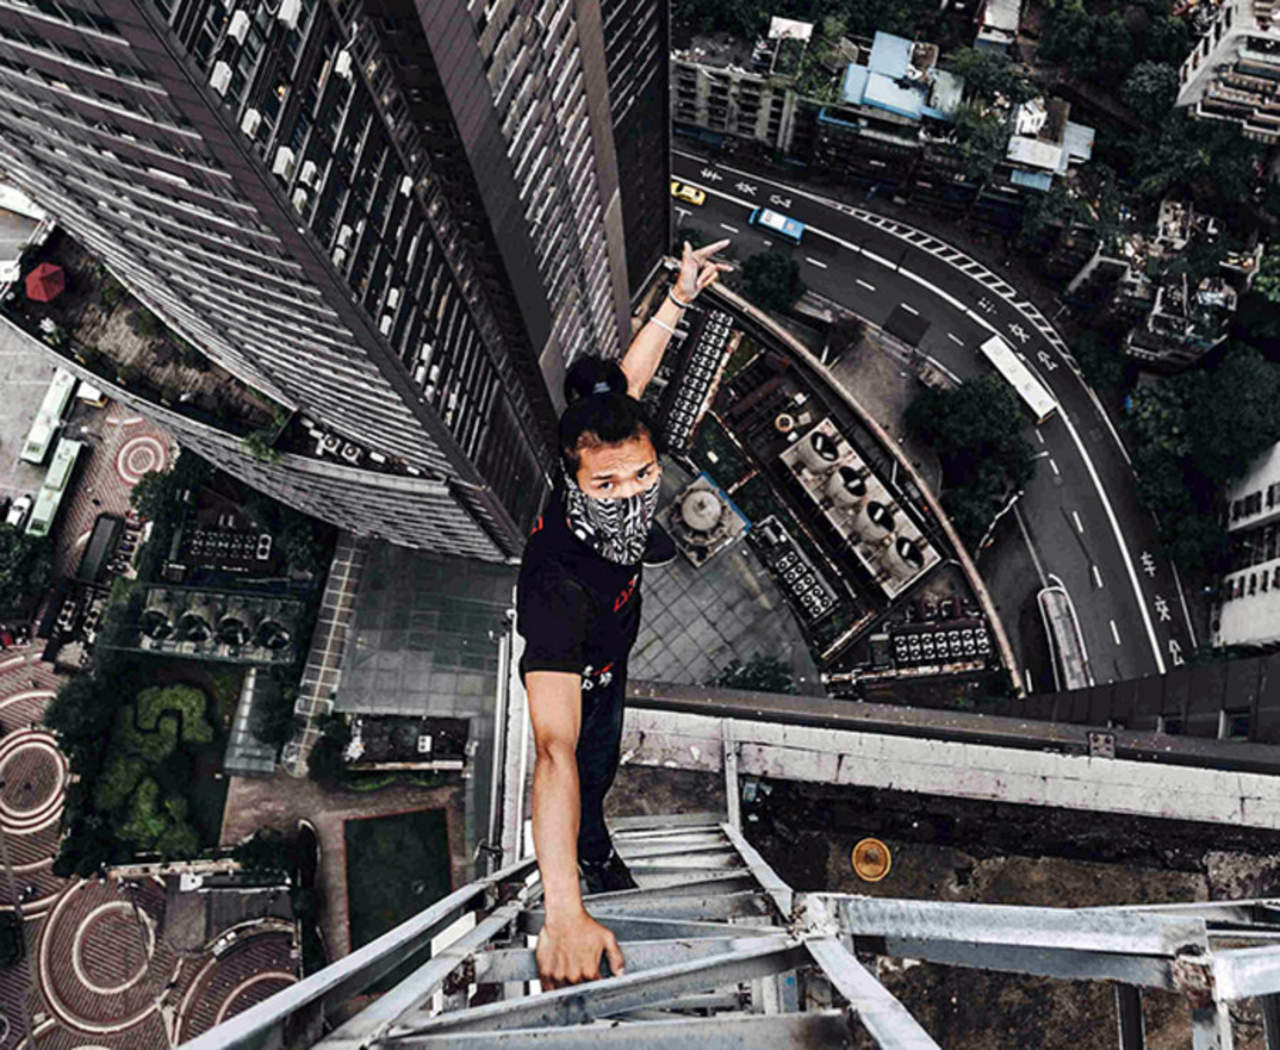 Wang era conocido por ser un escalador de edificios y por realizar acrobacias en las alturas, sin protección.
